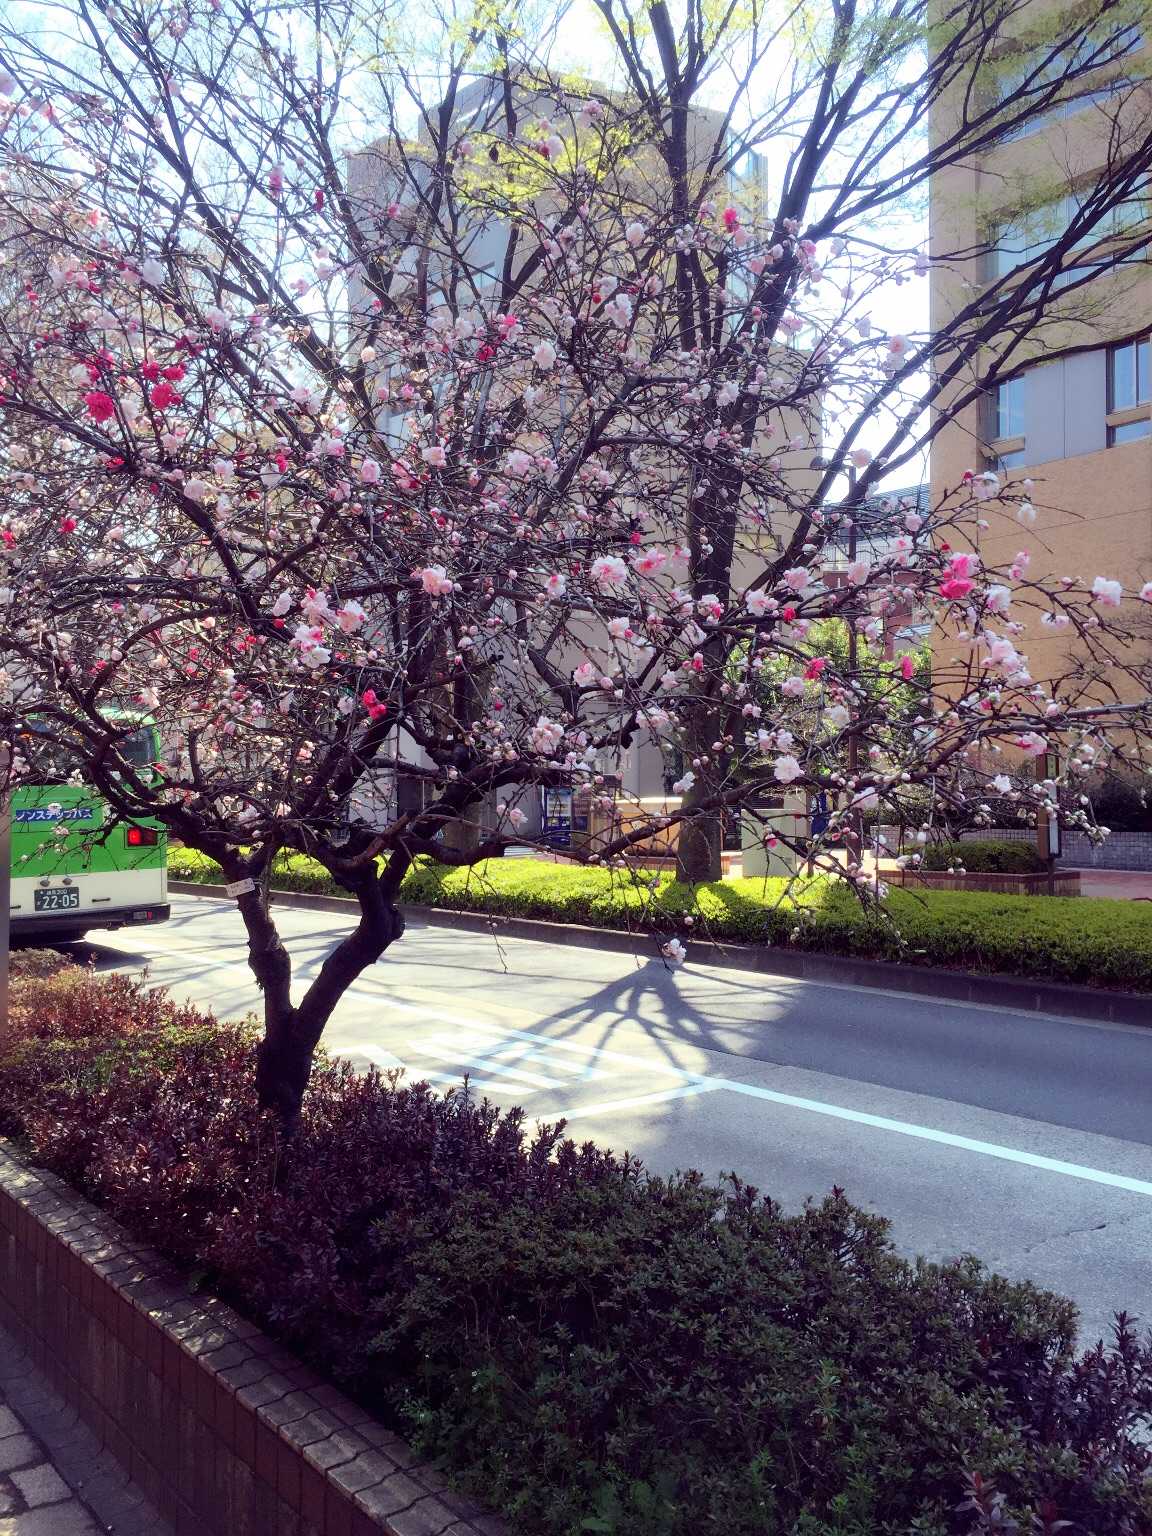 我家里早稻田大学走路5分钟,门口就有一条神田川,两边都是樱花树,樱花